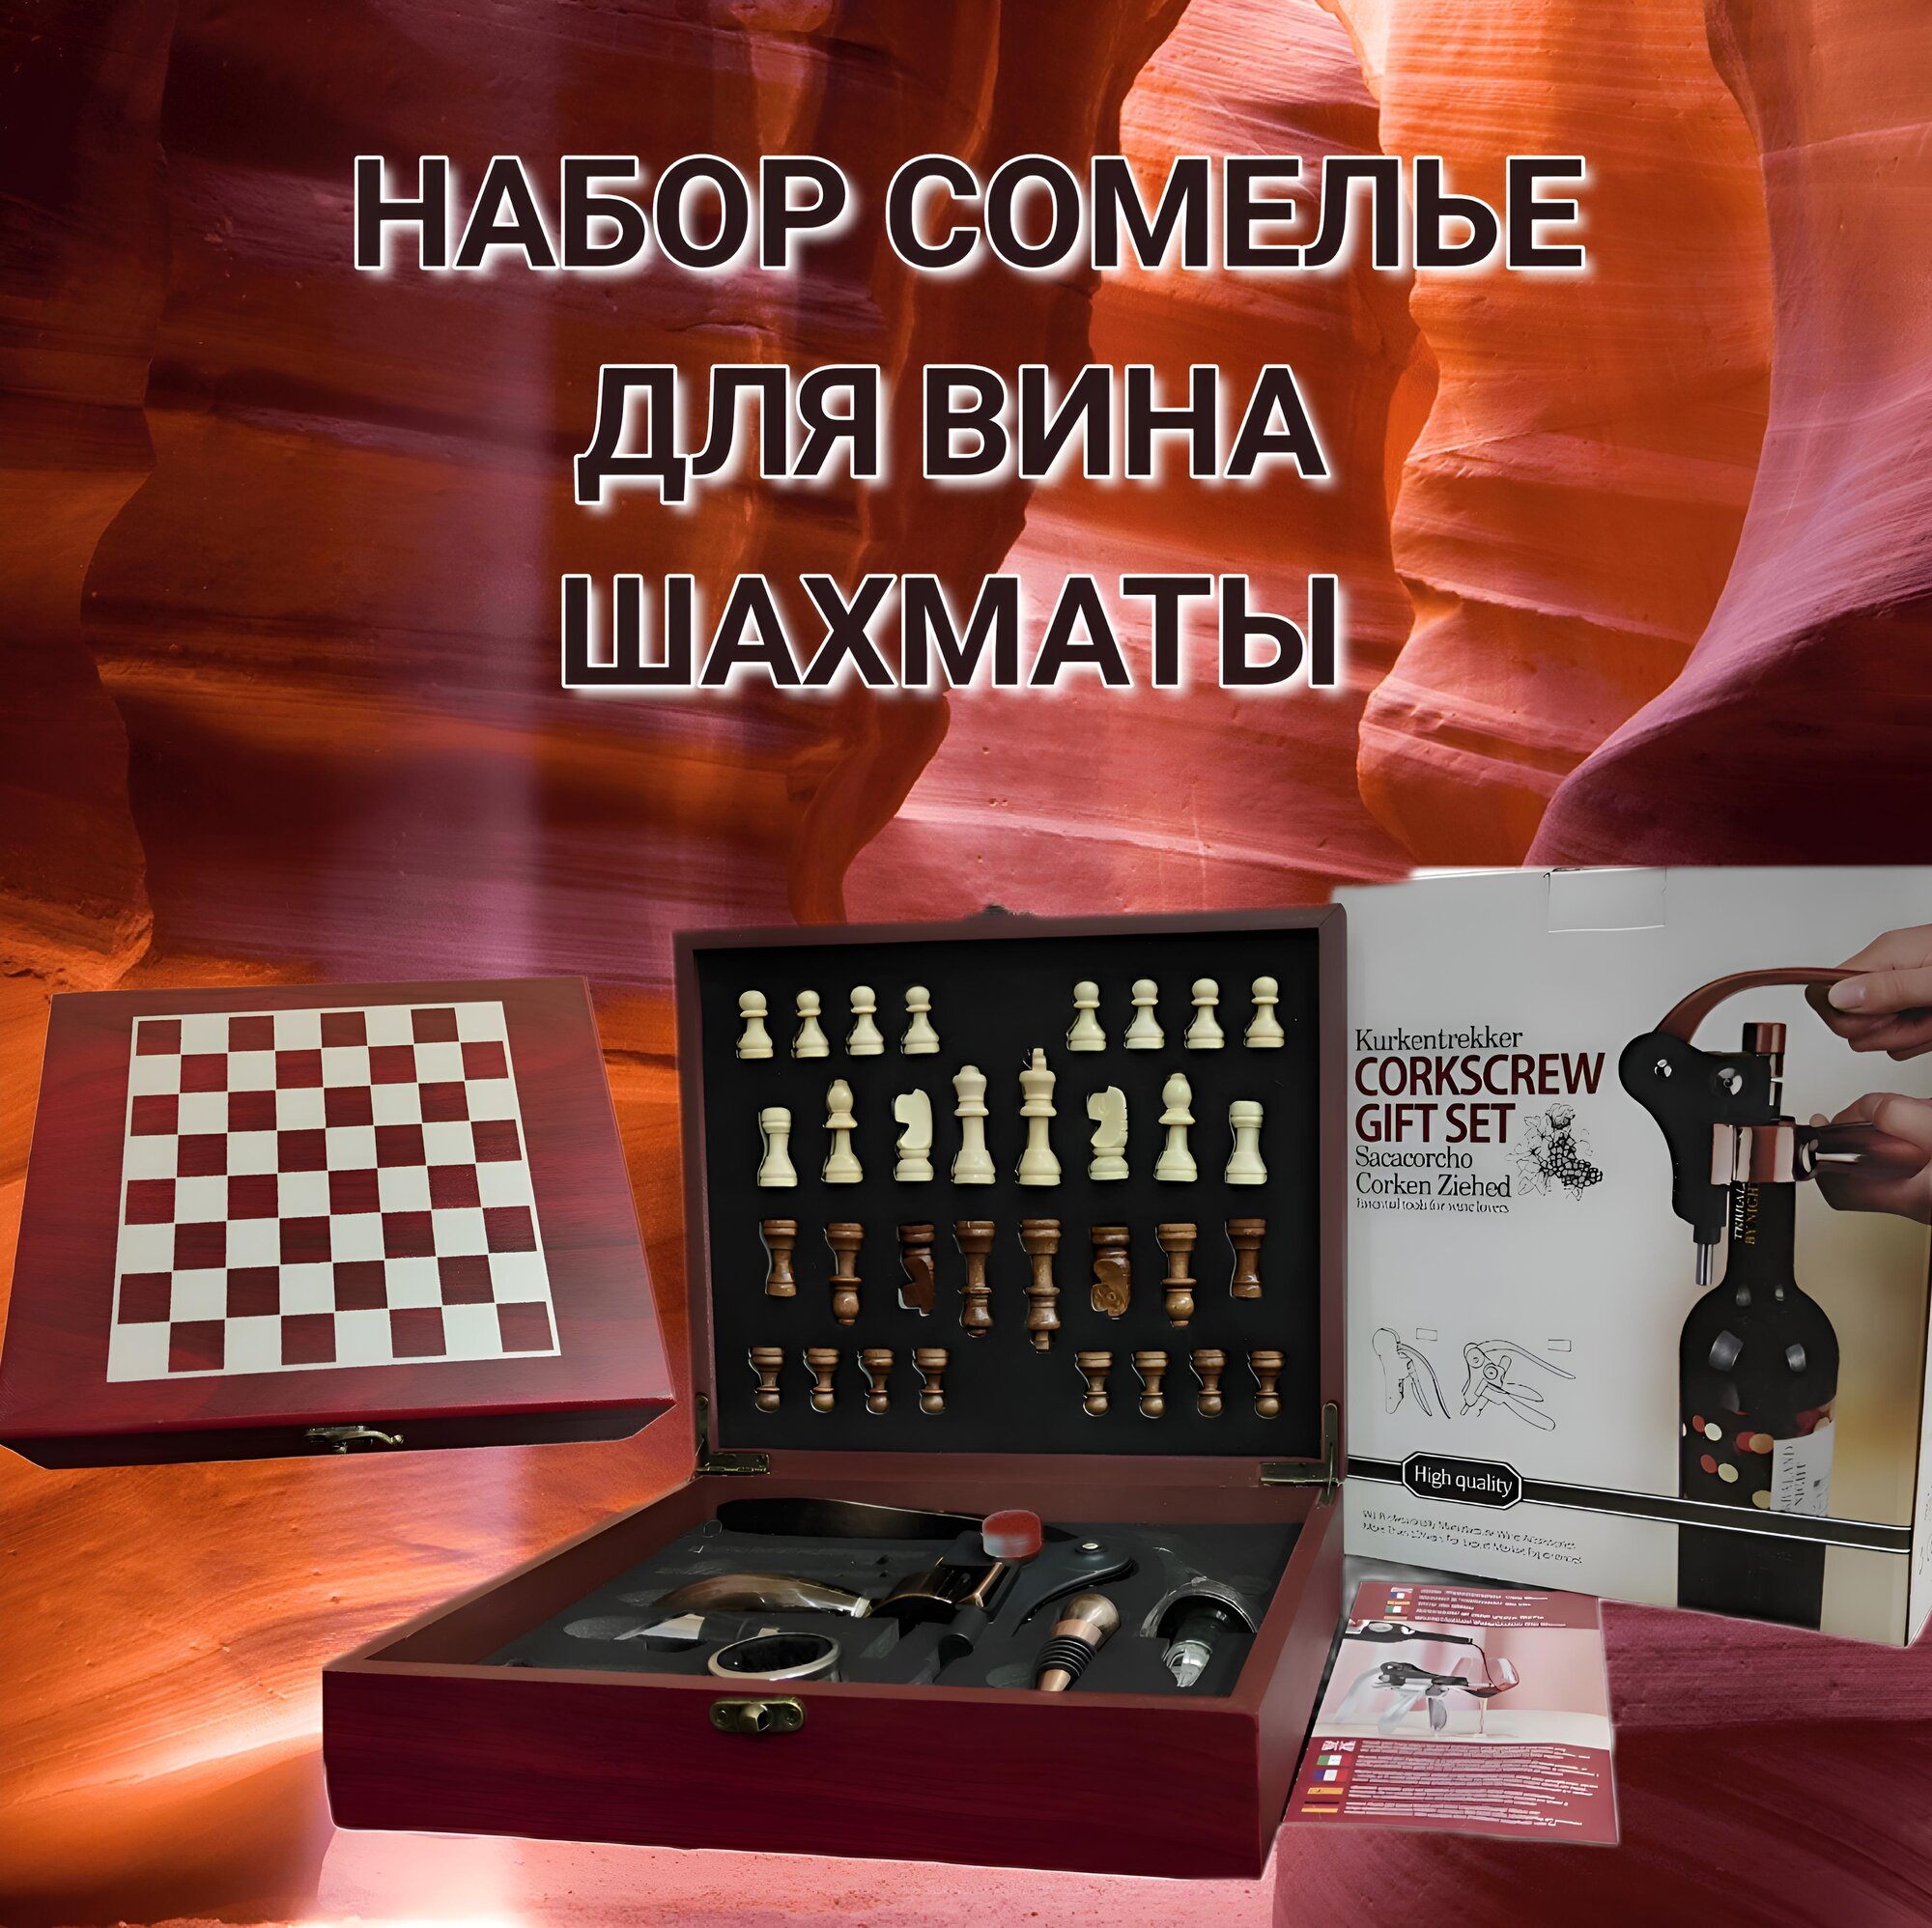 Подарочный набор сомелье Шахматы, набор аксессуаров для вина с шахматами / Красная коробка